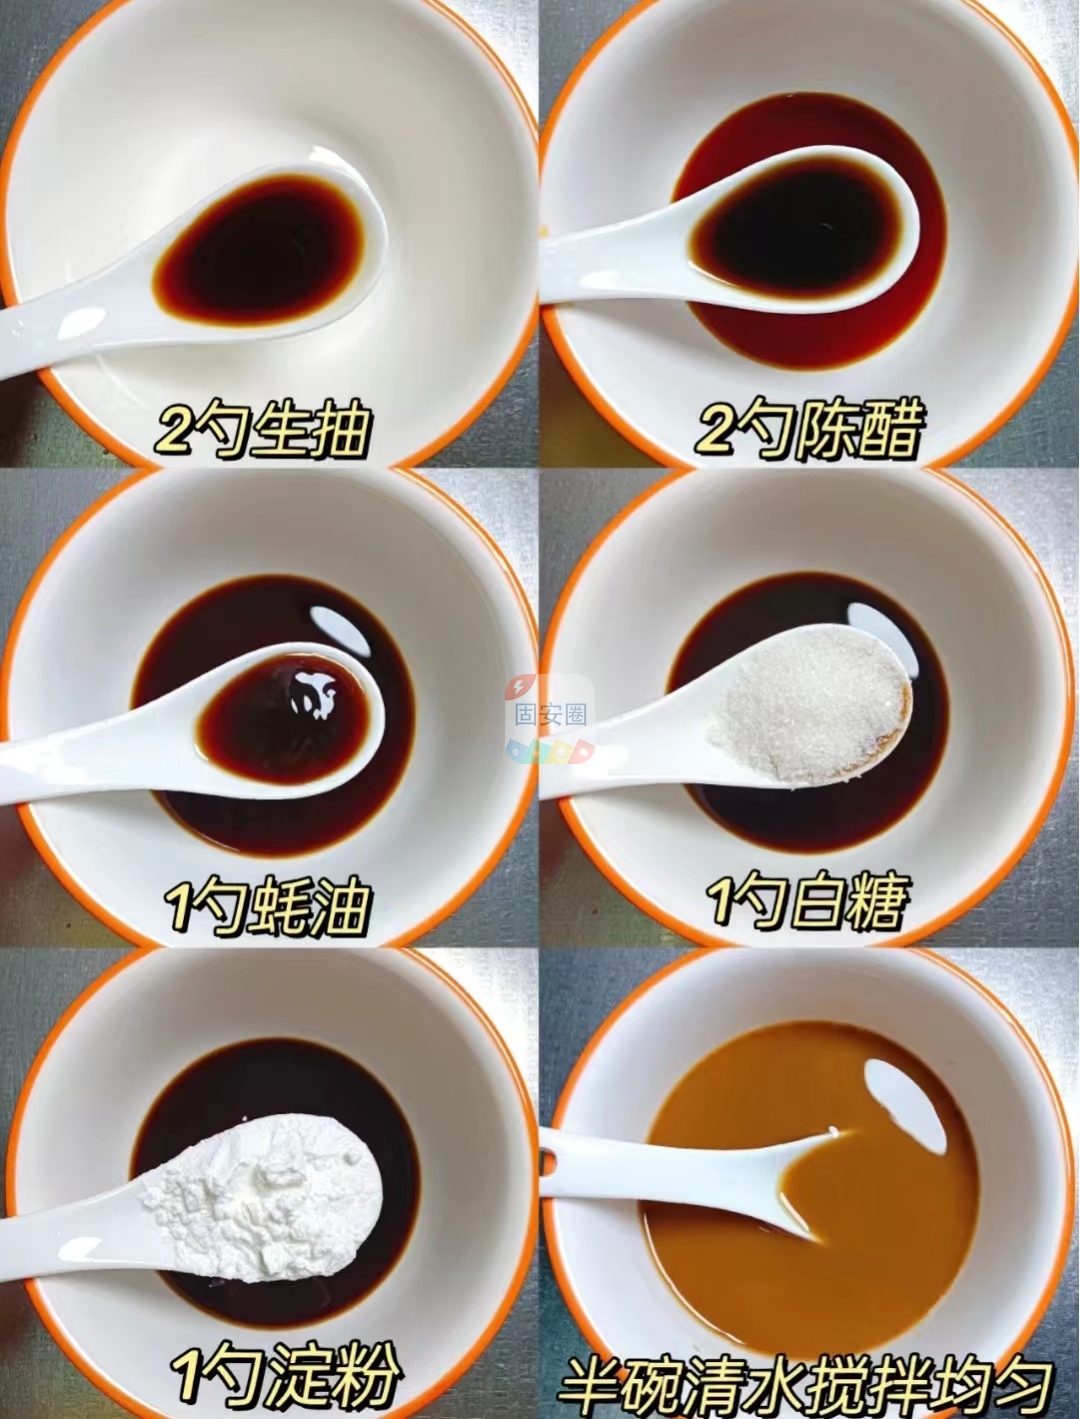 鱼香肉丝可以试试这样做，汤汁拌饭超好吃3148 作者:中国大厨 帖子ID:201291 鱼香肉丝,肉丝,可以,试试,这样